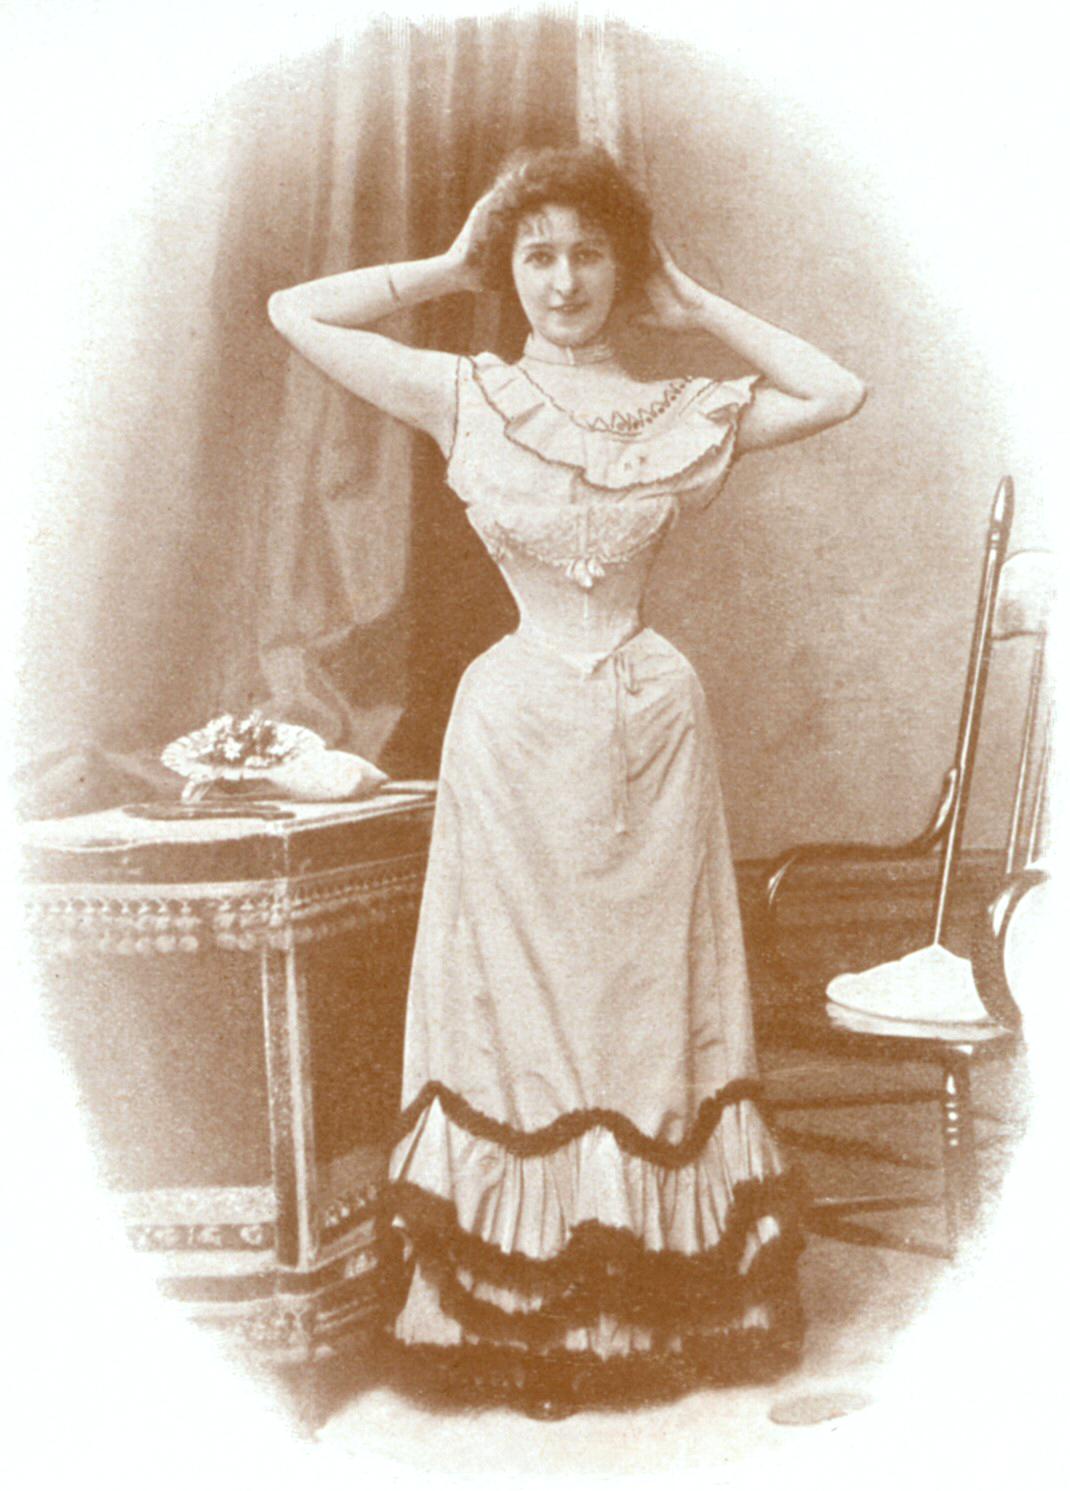 Paryżanka Źródło: Dupont, Paryżanka, 1898, domena publiczna.